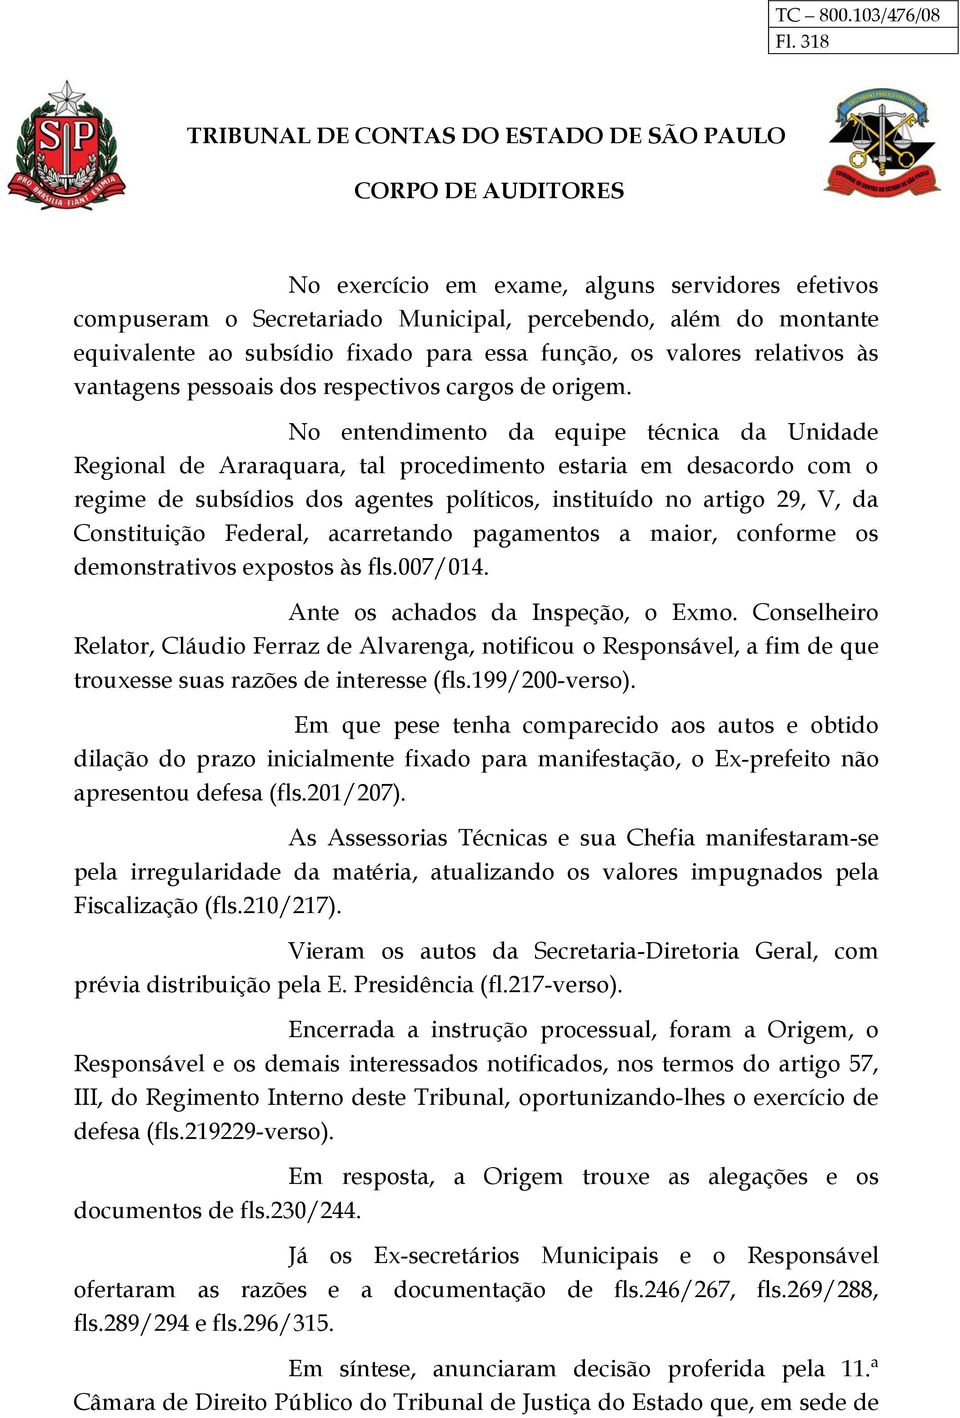 No entendimento da equipe técnica da Unidade Regional de Araraquara, tal procedimento estaria em desacordo com o regime de subsídios dos agentes políticos, instituído no artigo 29, V, da Constituição